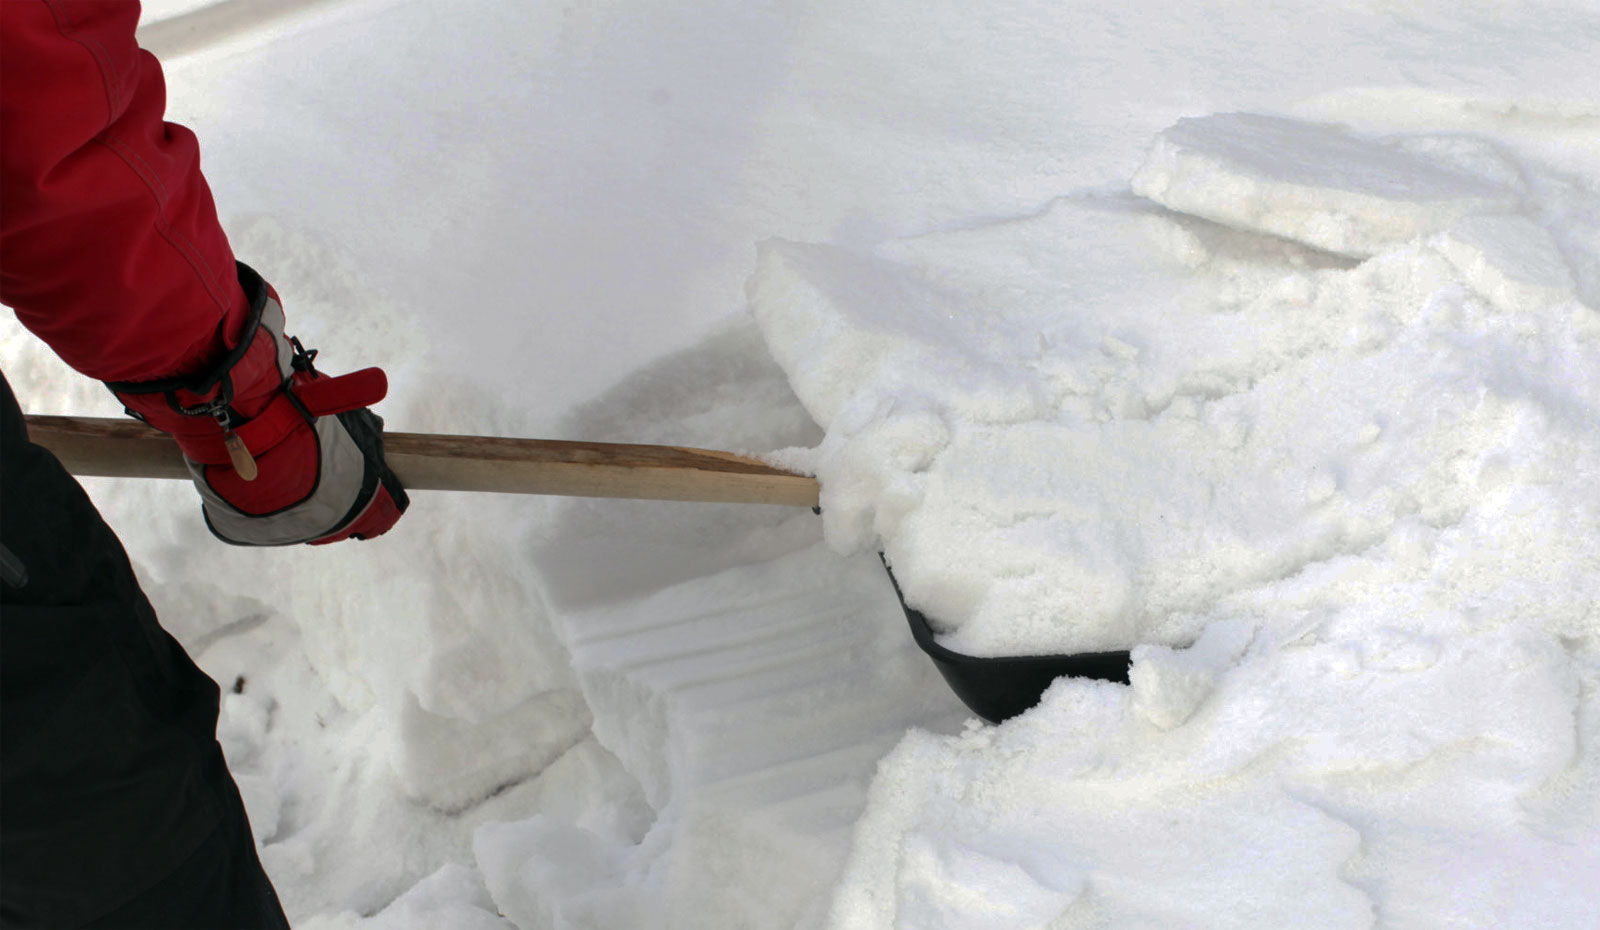 Убрать сугроб. Убирает снег. Лопата для уборки снега. Уборка снега вручную. Лопата для очистки снега с крыши.